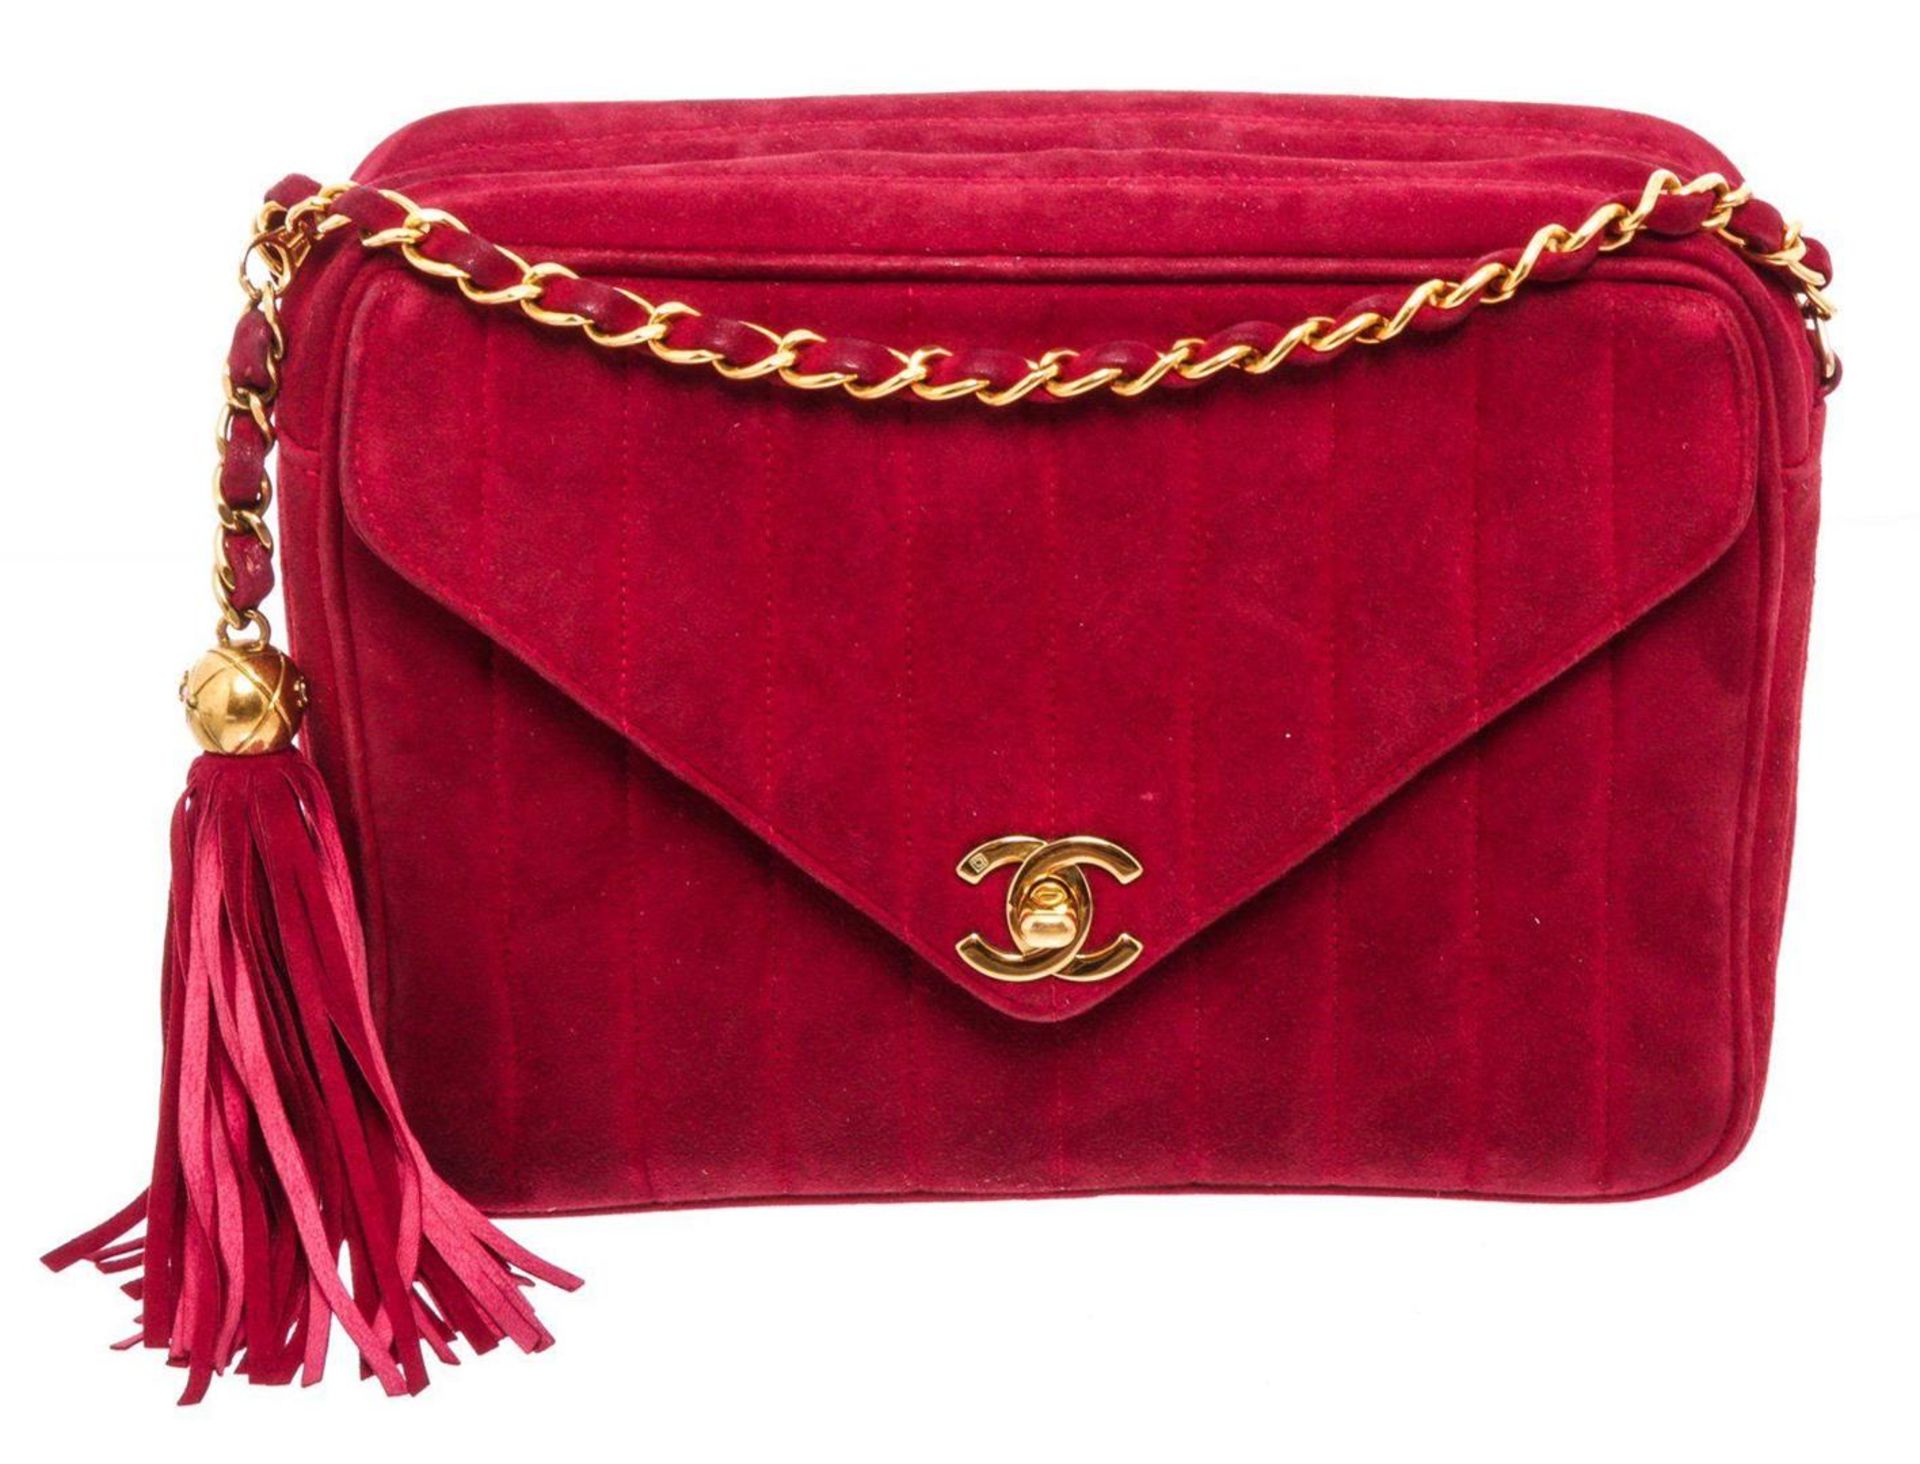 Chanel Red Suede Envelope Tassel Shoulder Bag